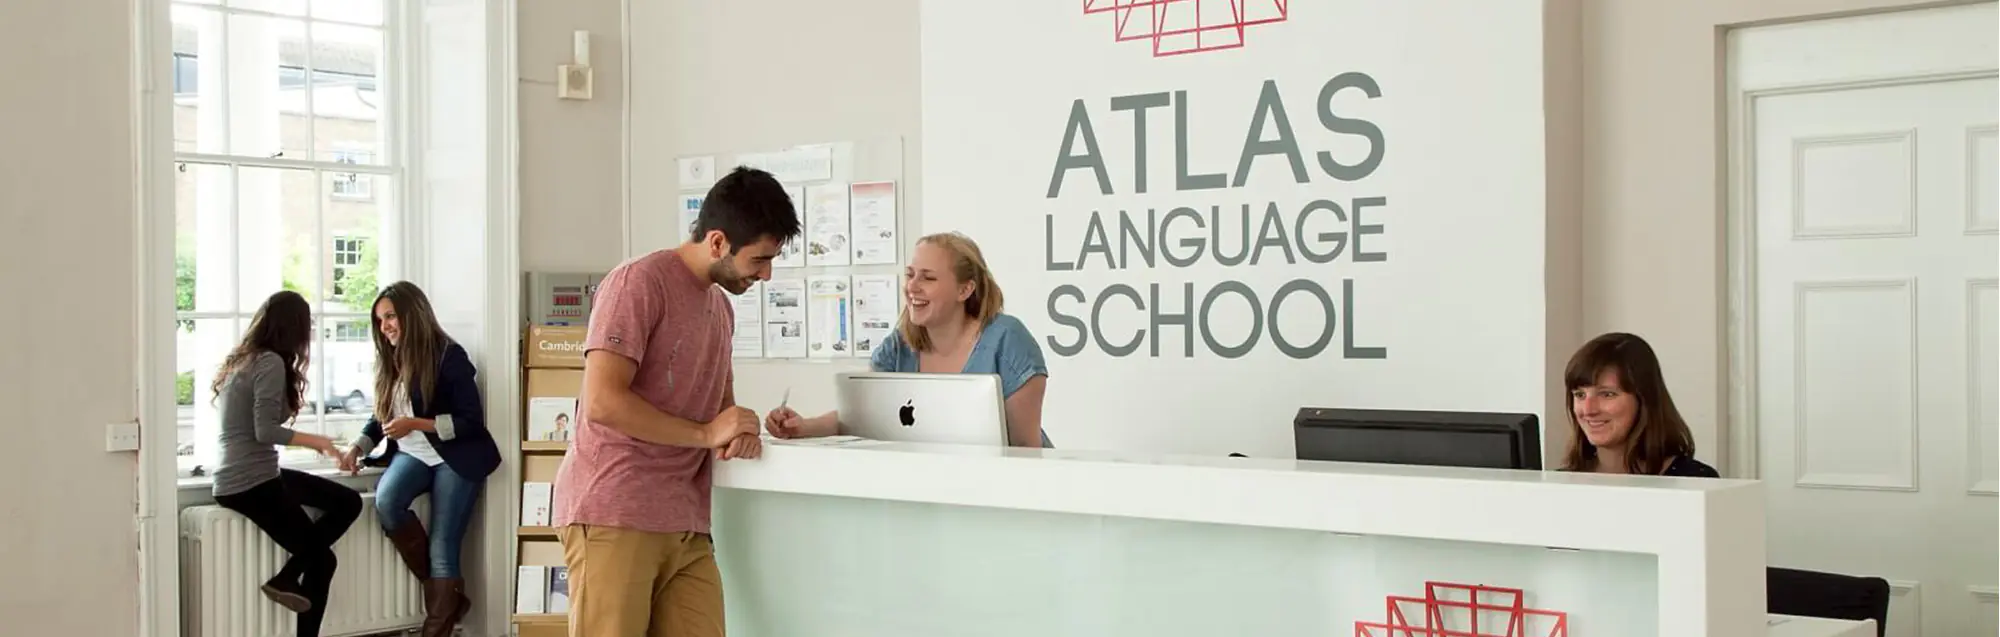 Les programmes de visa de étudier et travailler Atlas Language School